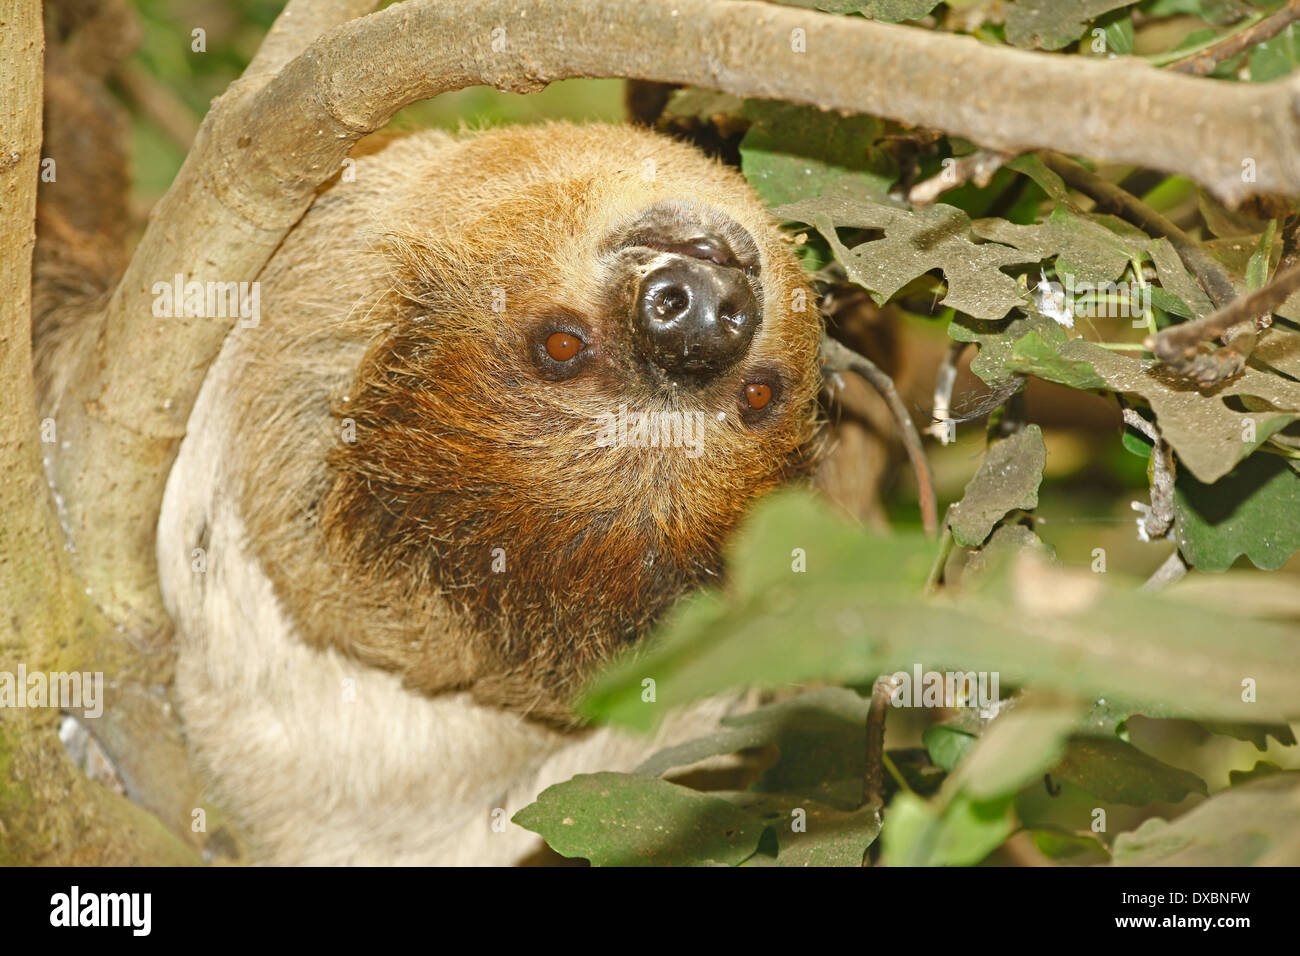 Linné die zwei – Finger Faultiere oder südlichen zwei-toed Sloth (Choloepus Didactylus) Closeup in tropischer Wald Lebensraum Stockfoto